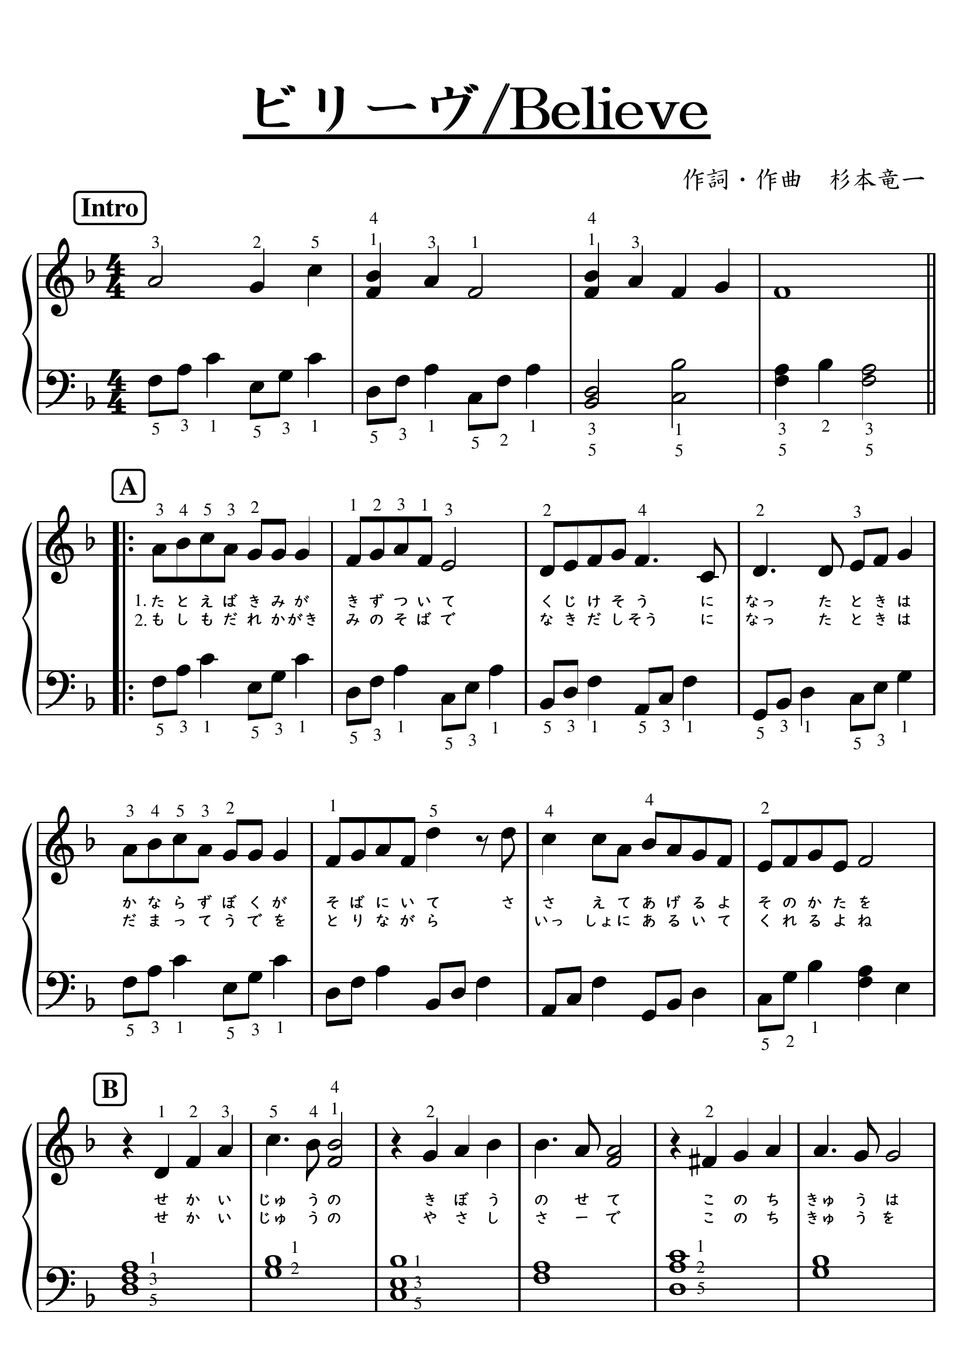 杉本竜一 - 【初級】ビリーヴ（believe）歌詞付き♪ (卒業,生きもの地球紀行) by ピアノの先生の楽譜集